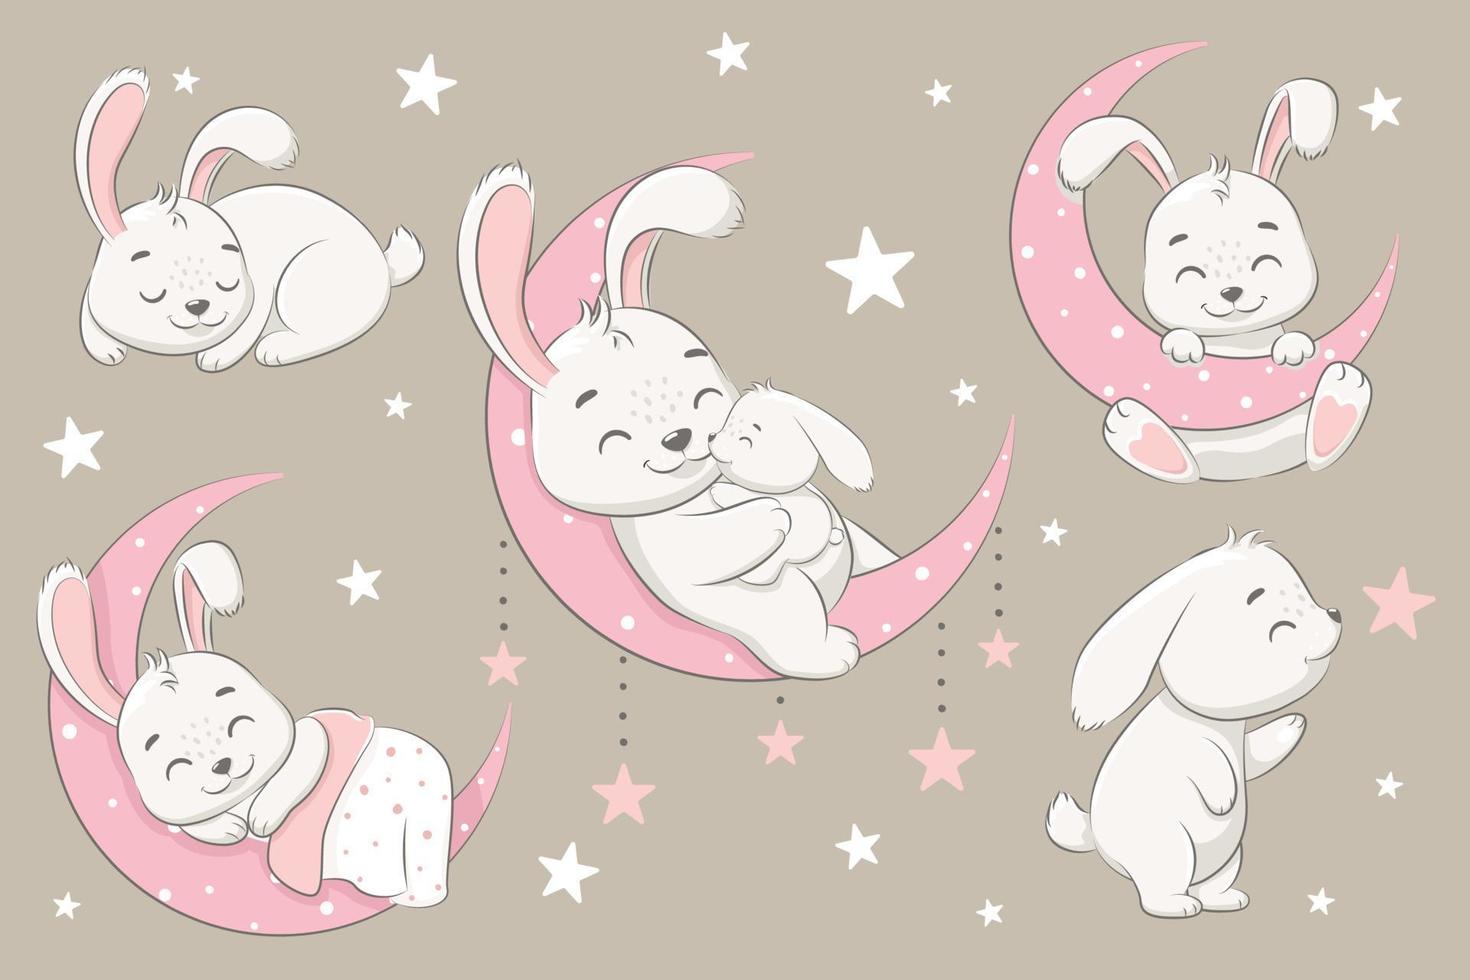 uma coleção de coelhos bonitos dormindo na lua, sonhando e voando em um sonho nas nuvens. ilustração em vetor de um desenho animado.